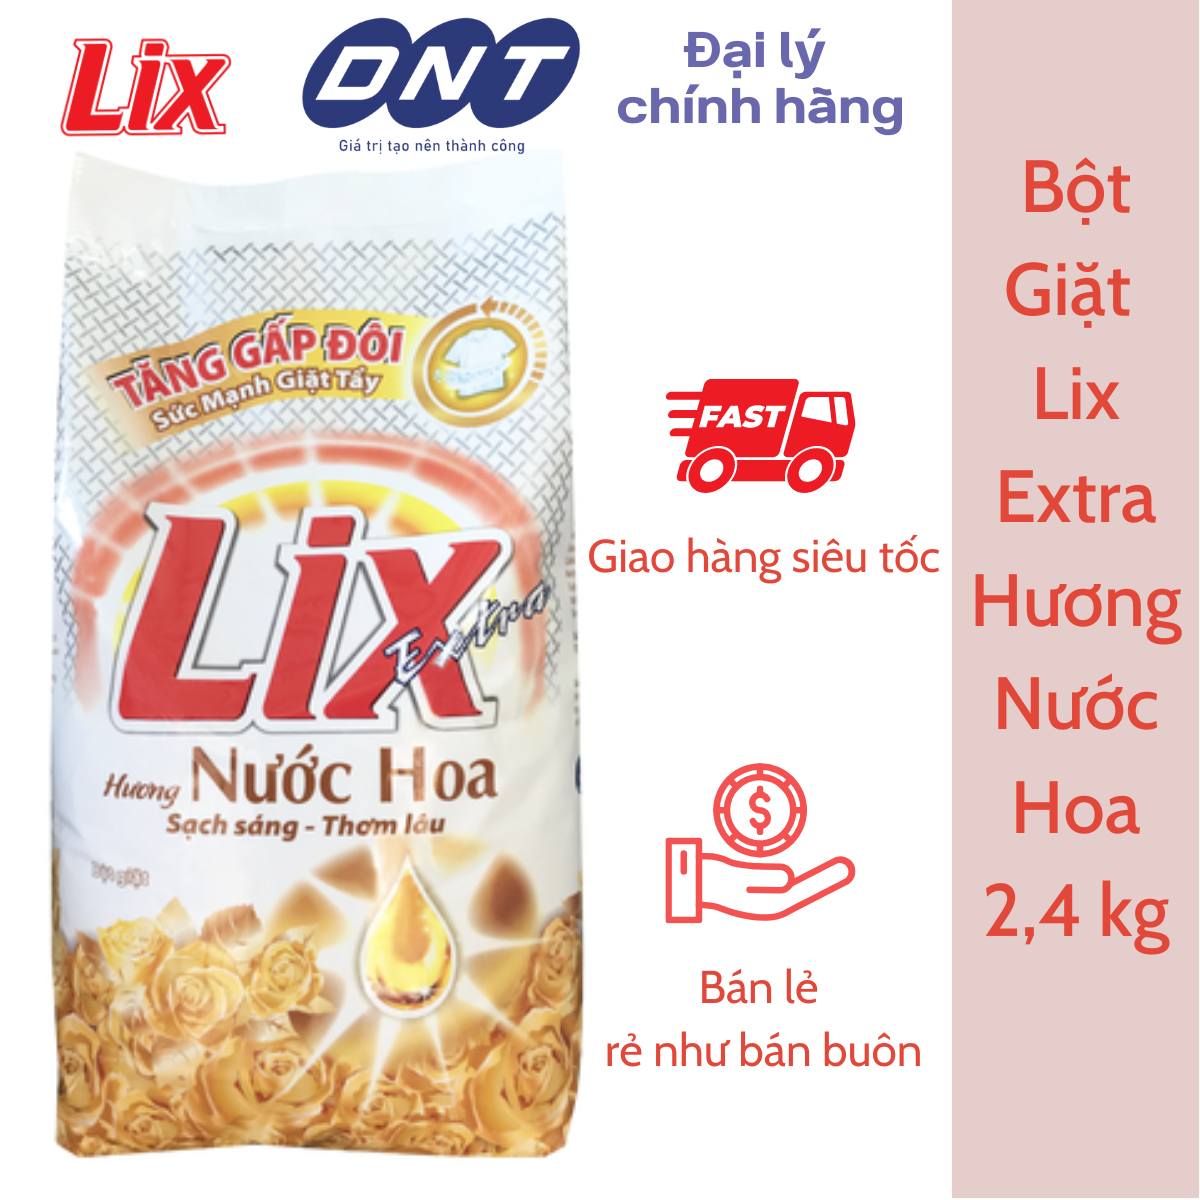 Bột Giặt LIX Extra Hương Nước Hoa 2,4kg - Phân phối Chính hãng